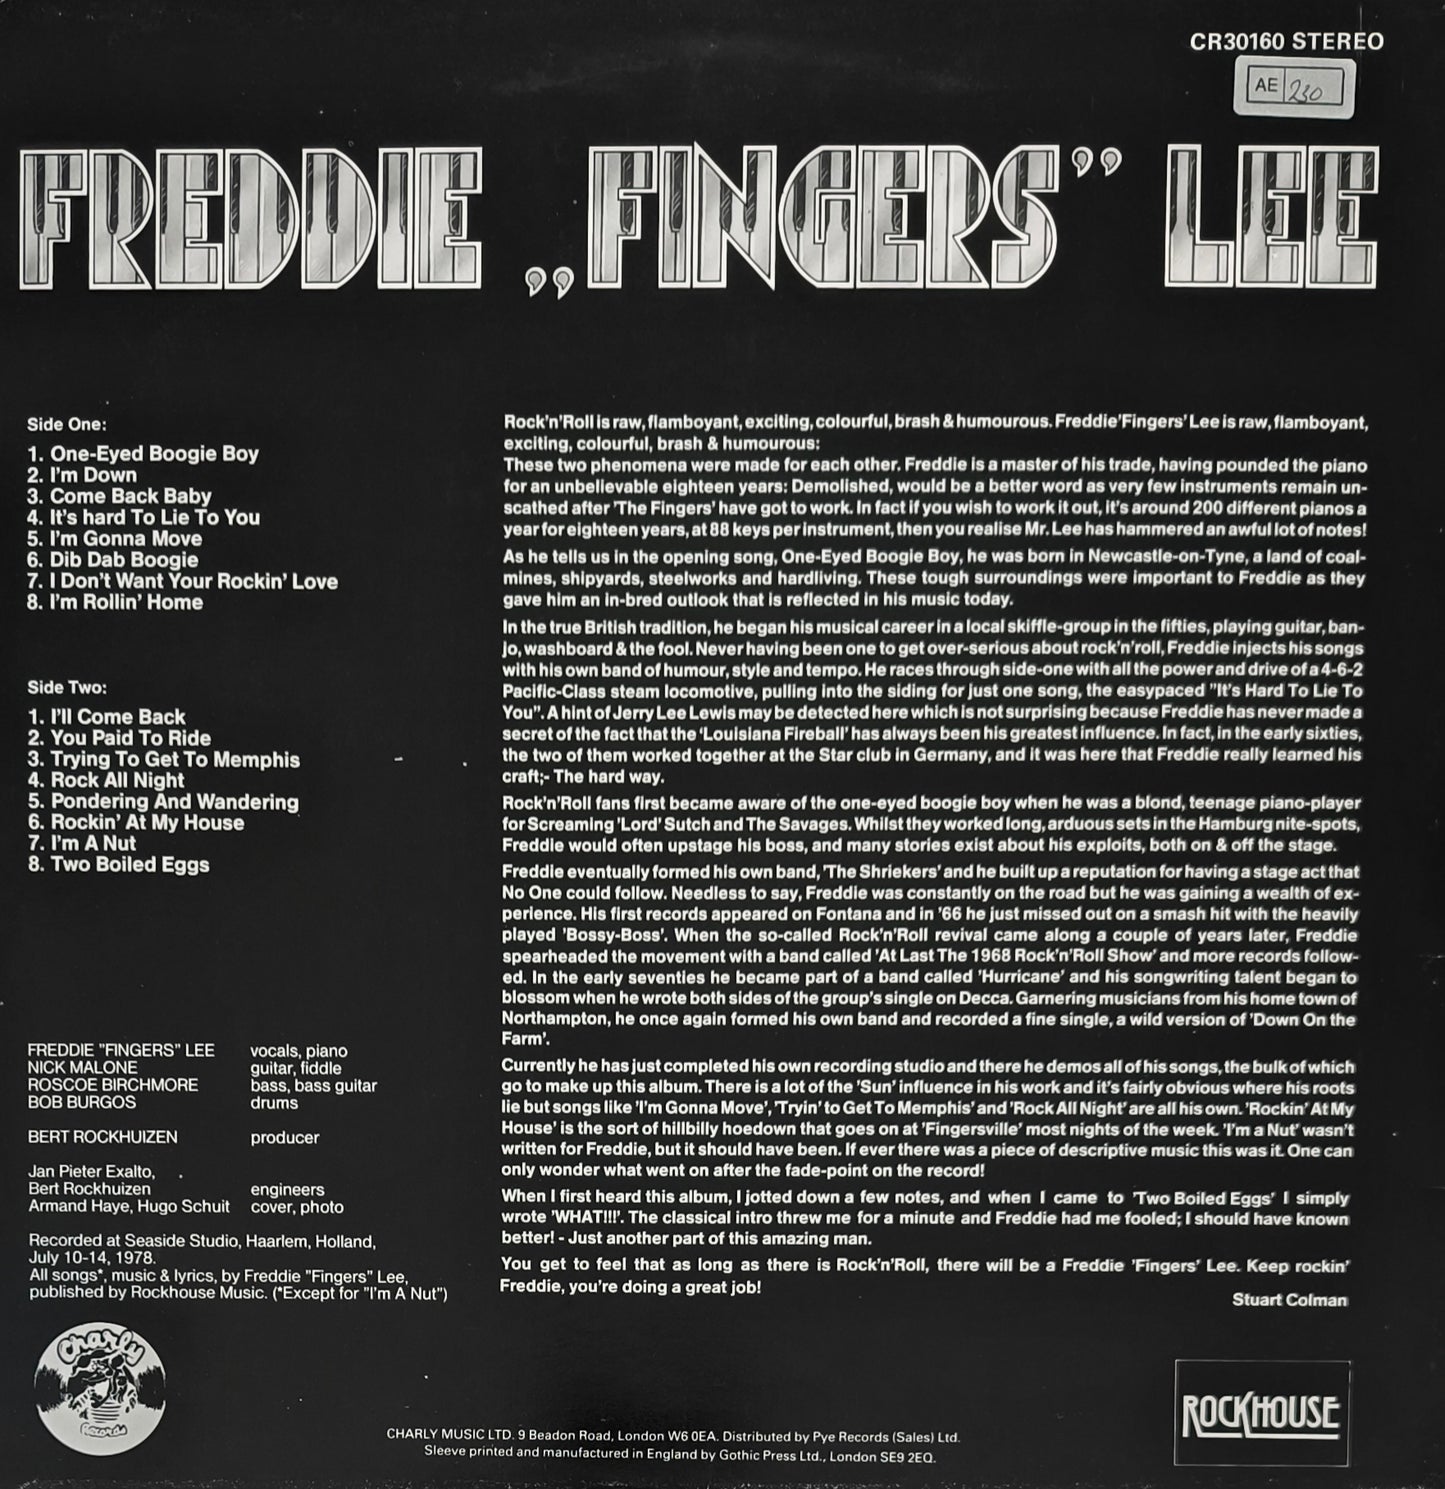 FREDDIE "FINGERS" LEE - Freddie "Fingers" Lee